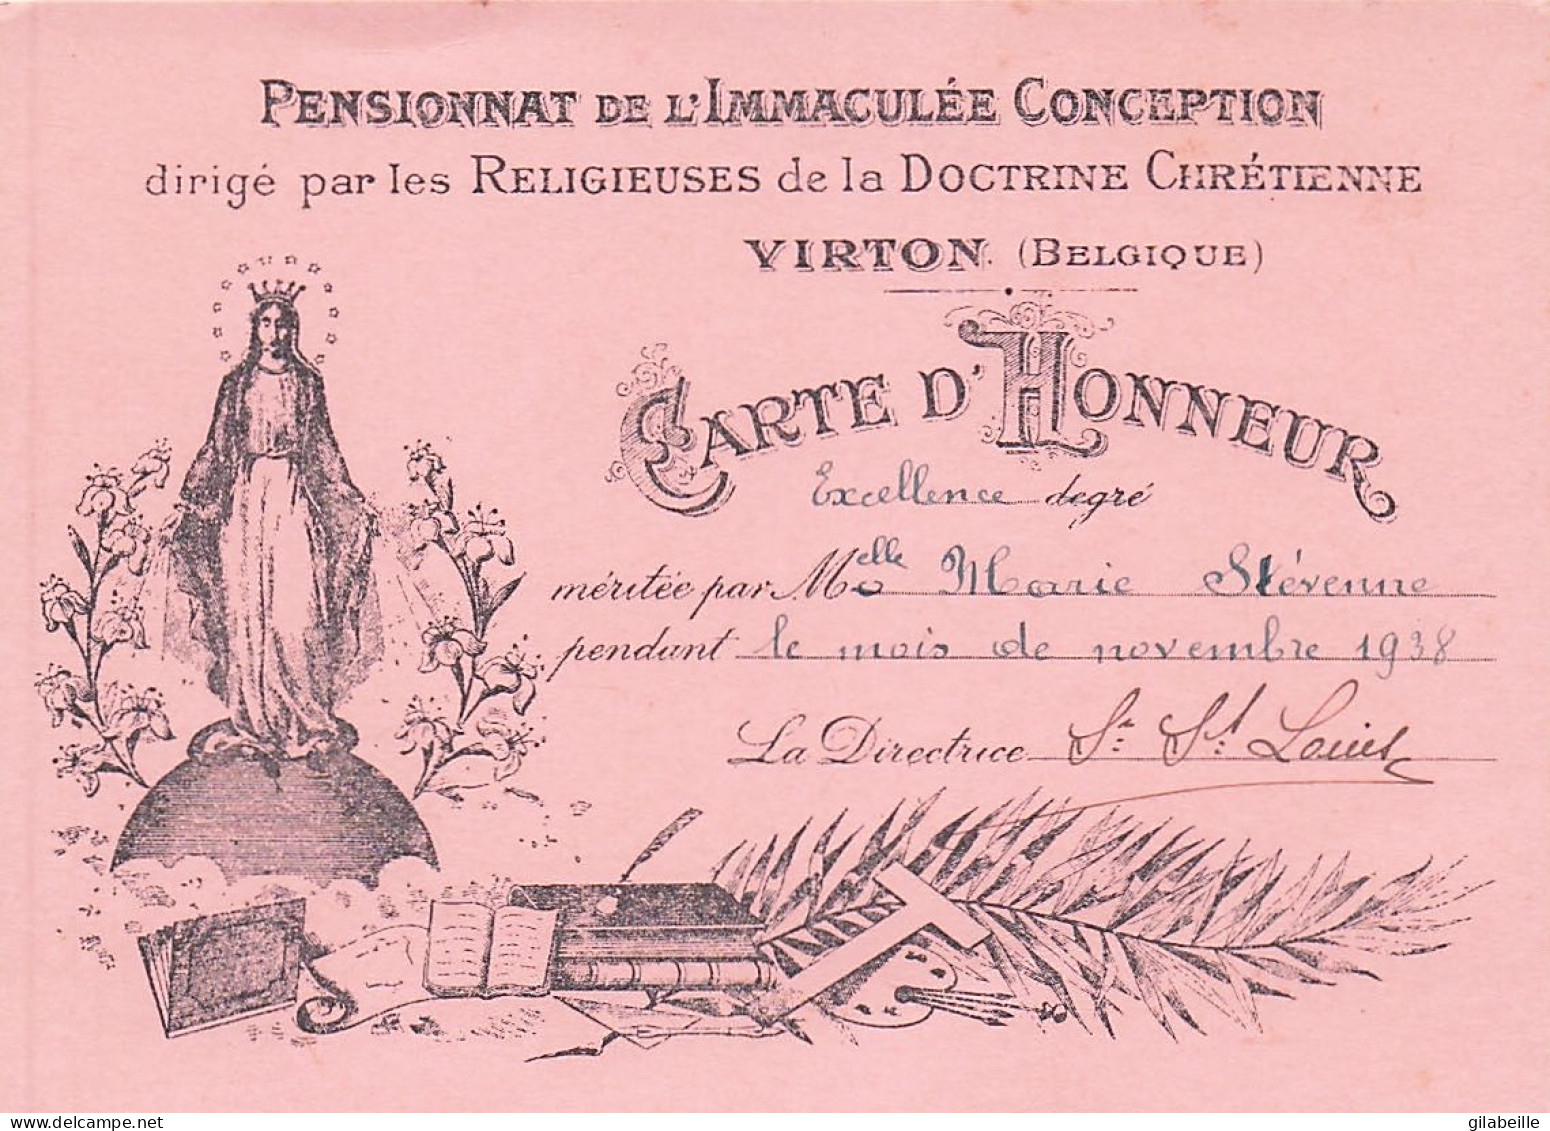 Luxembourg - VIRTON - Carte D'honneurdegré Excellence - Pensionnat De L'immaculé Conception - Novembre 1938 - Diplomi E Pagelle